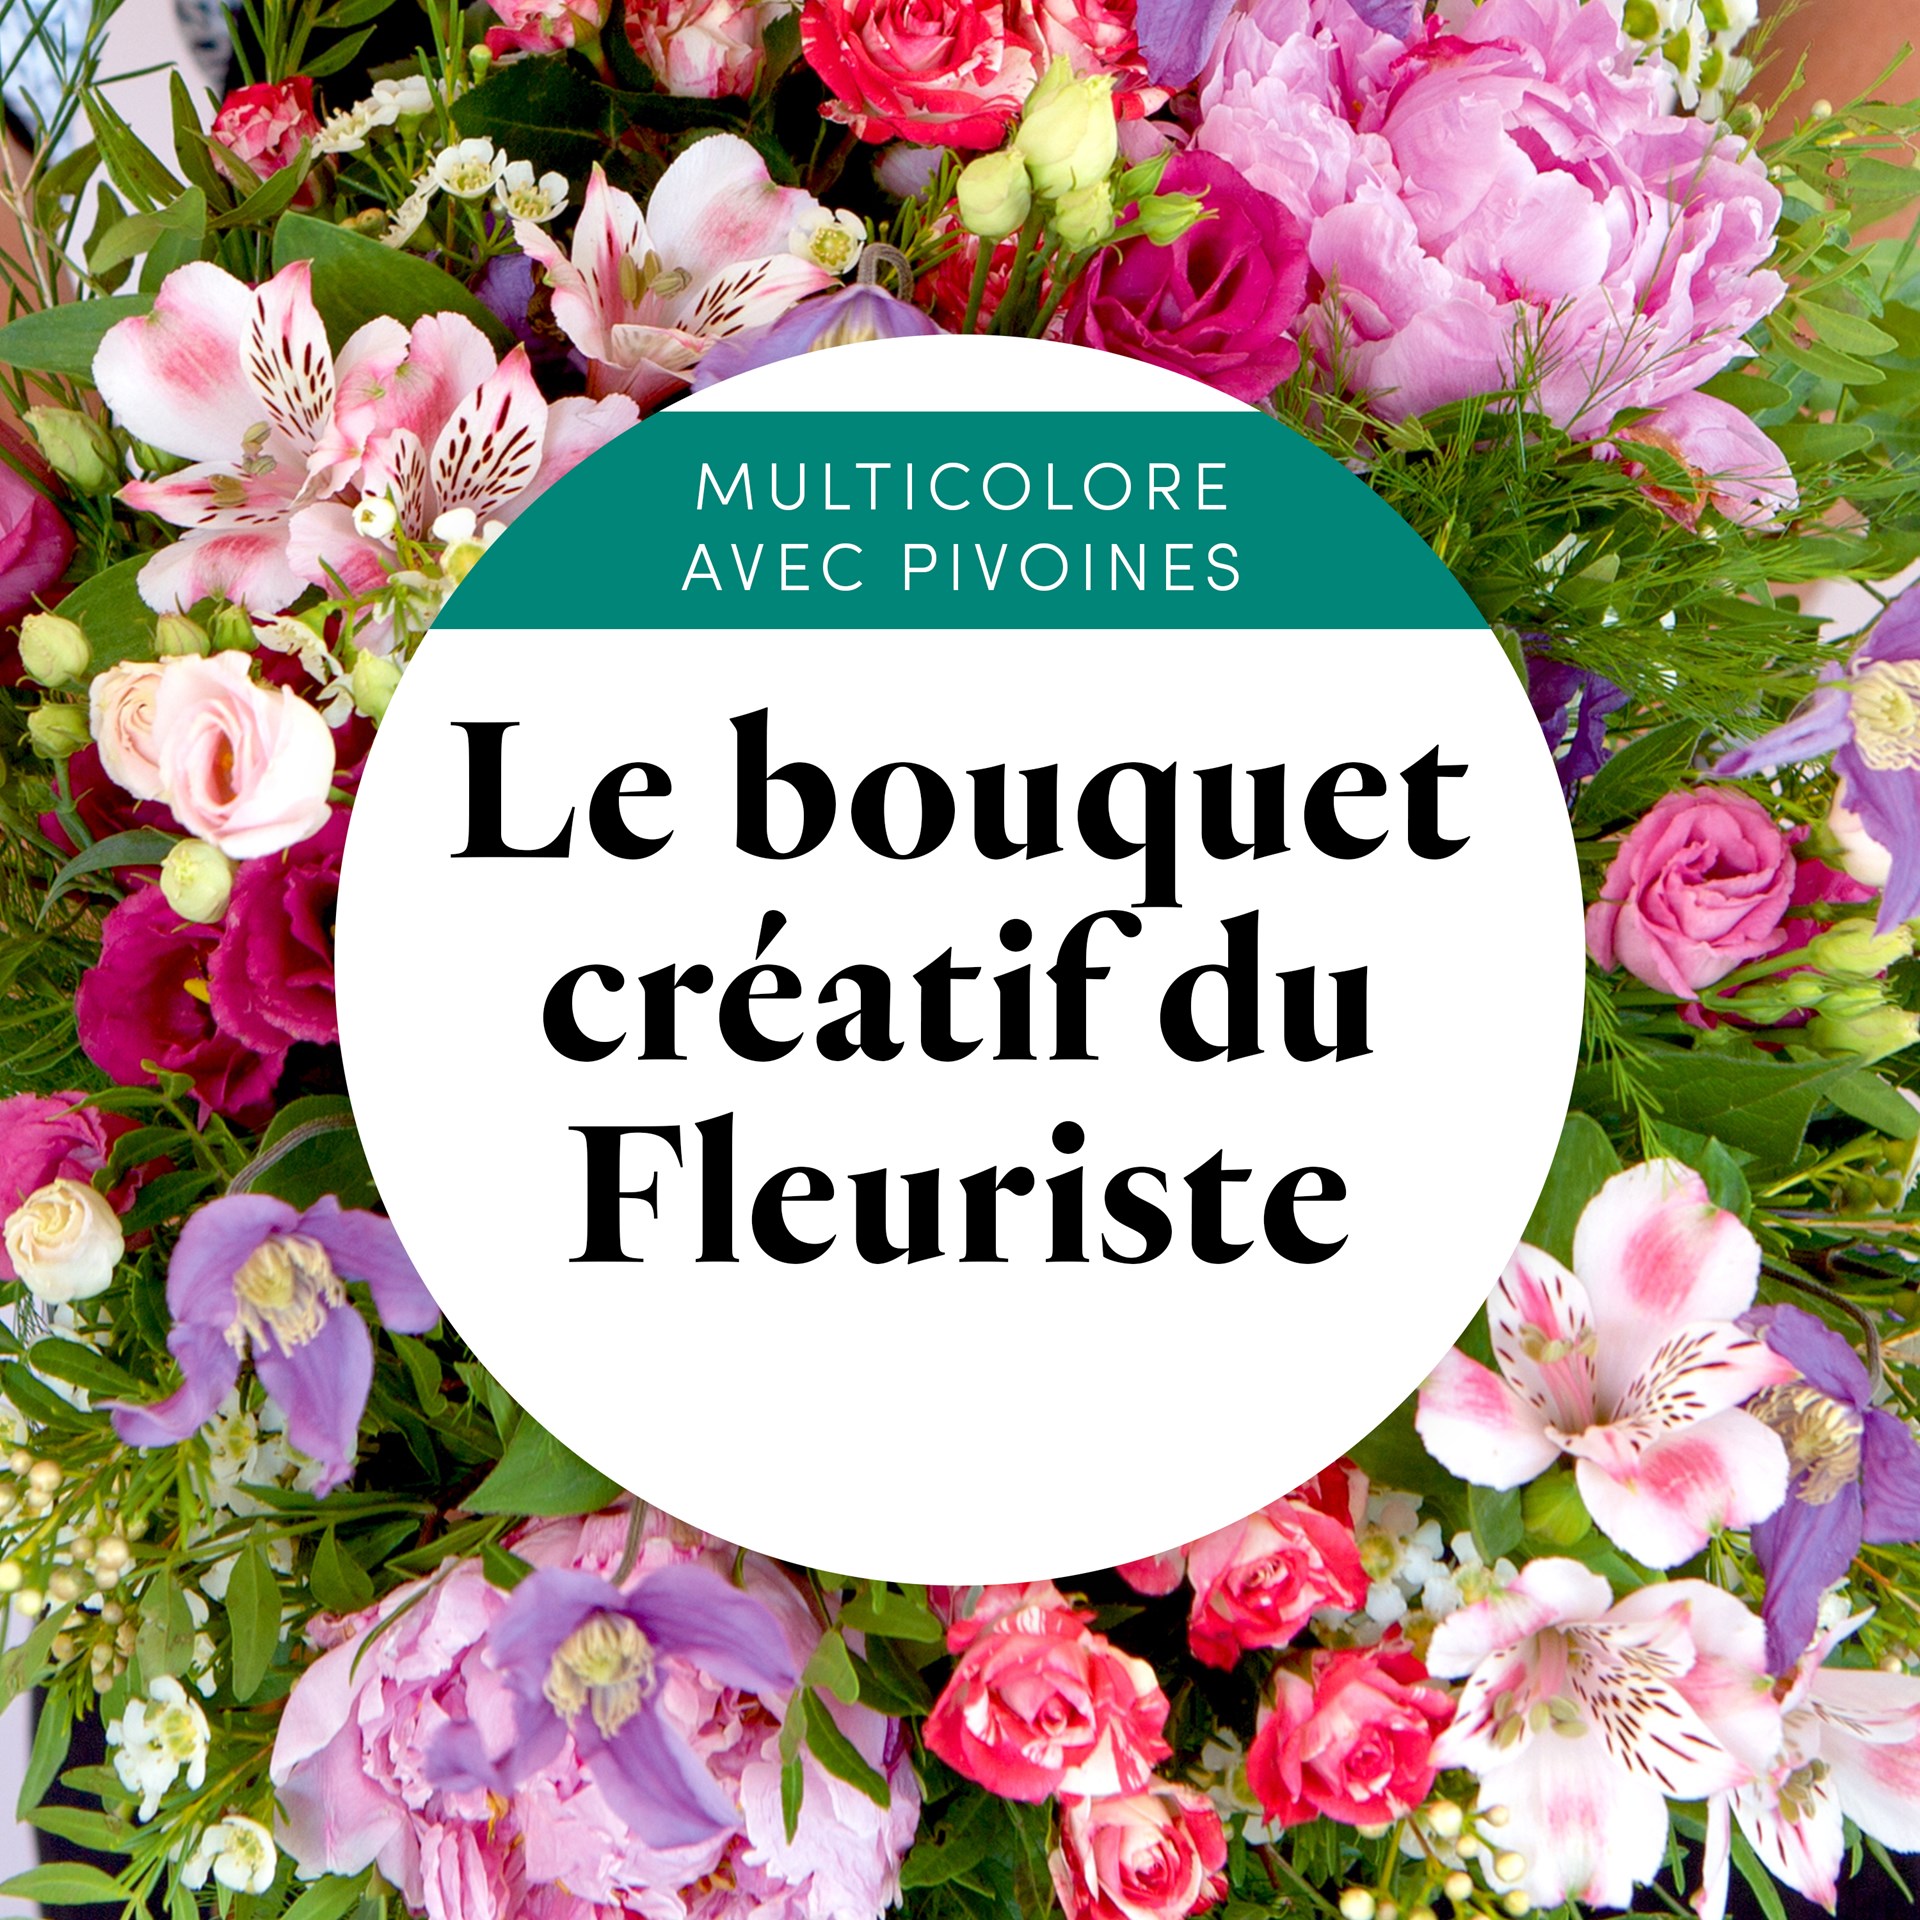 Bouquet creatif du fleuriste multicolore avec pivoines